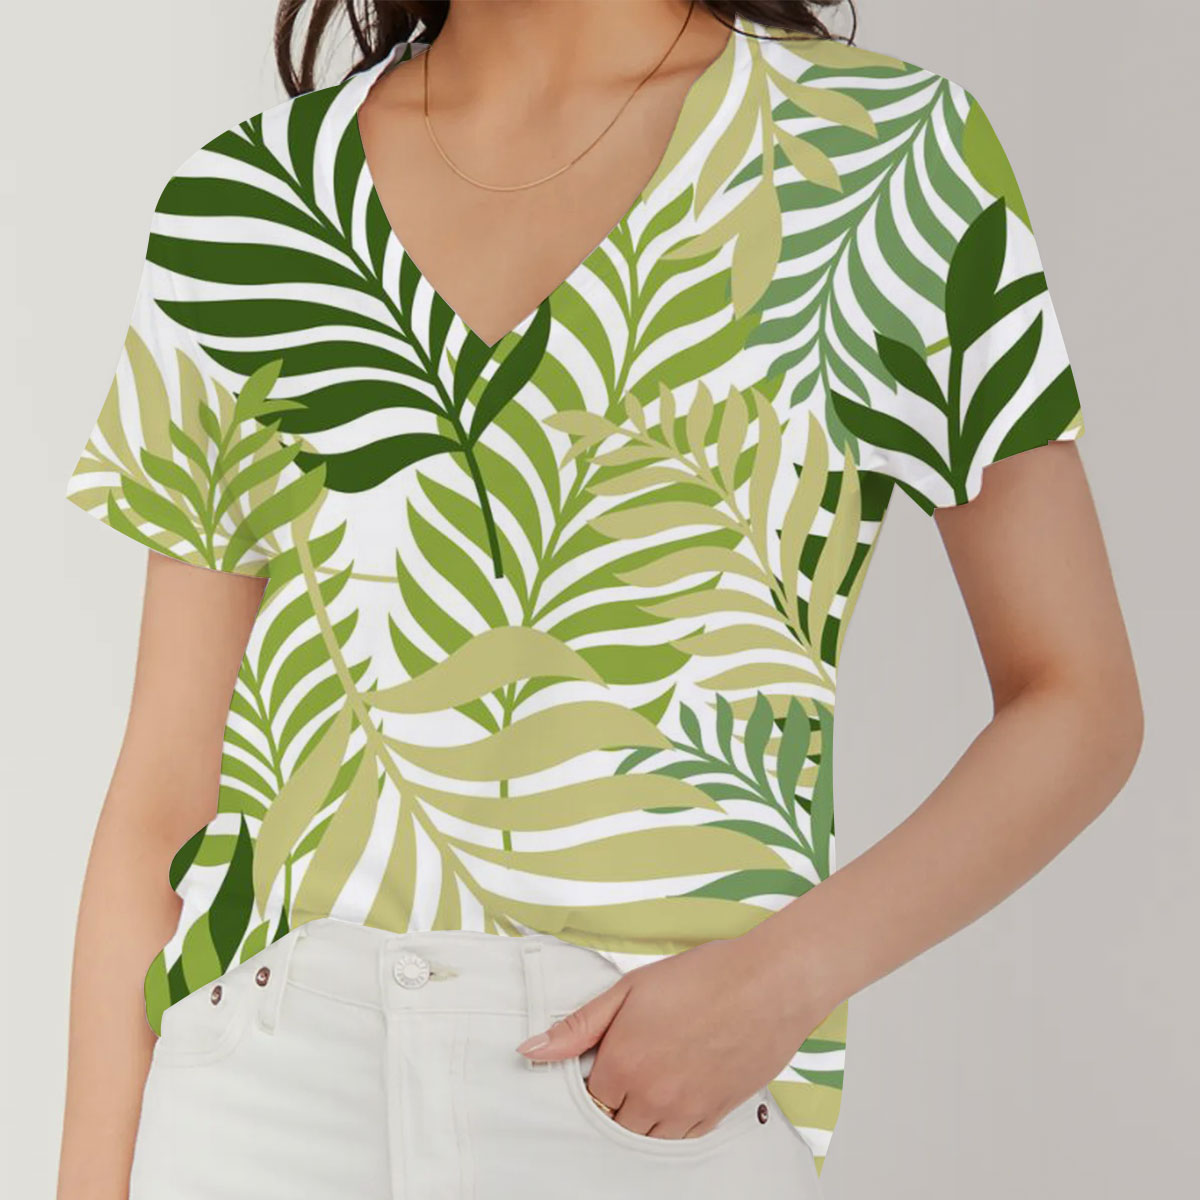 Green Palm Tree Leaves V-Neck Women's T-Shirt